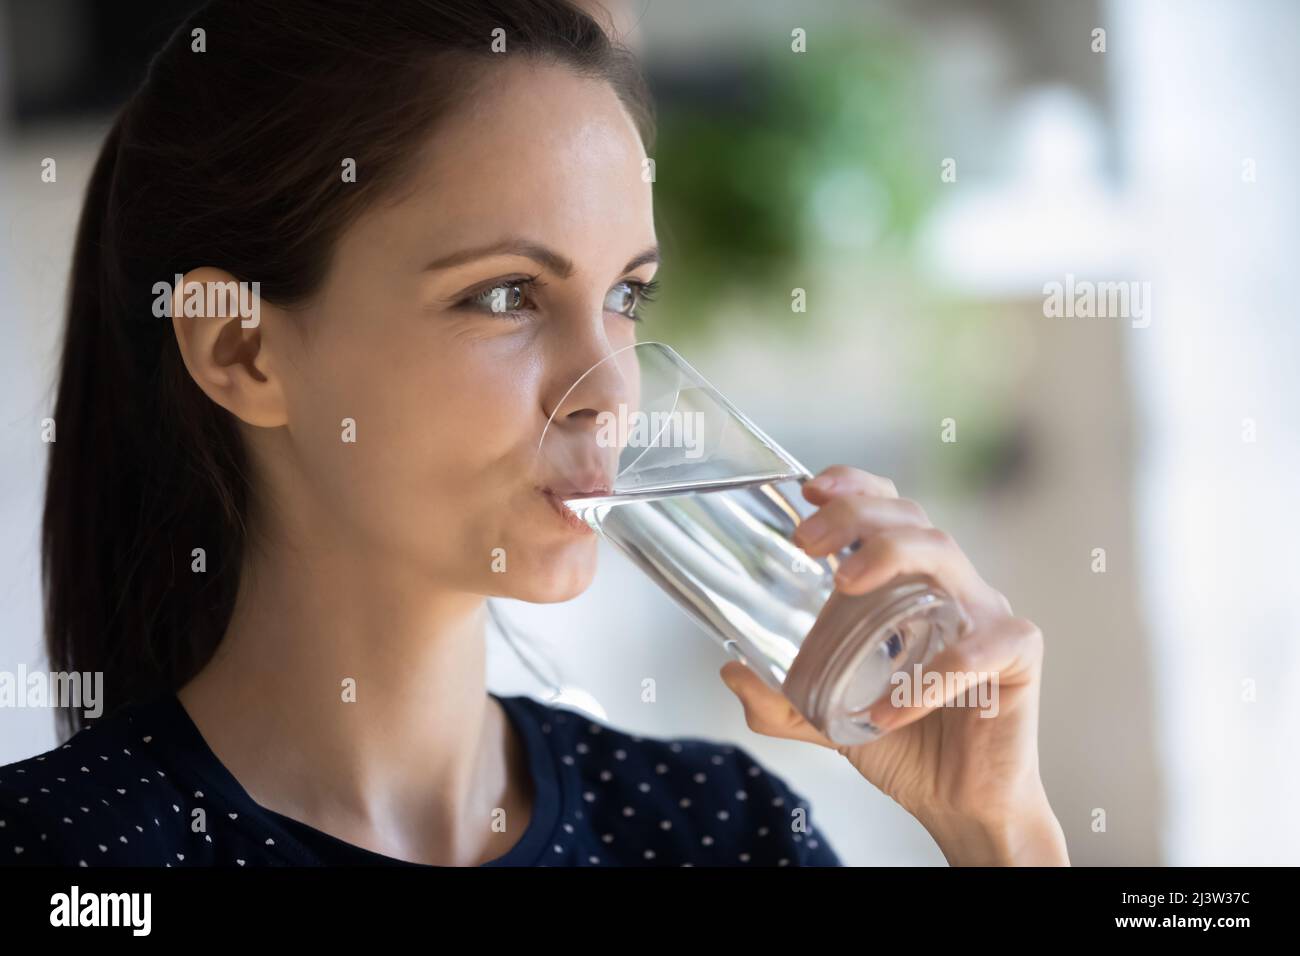 Primo piano attraente 20s donna tiene vetro bere acqua naturale Foto Stock